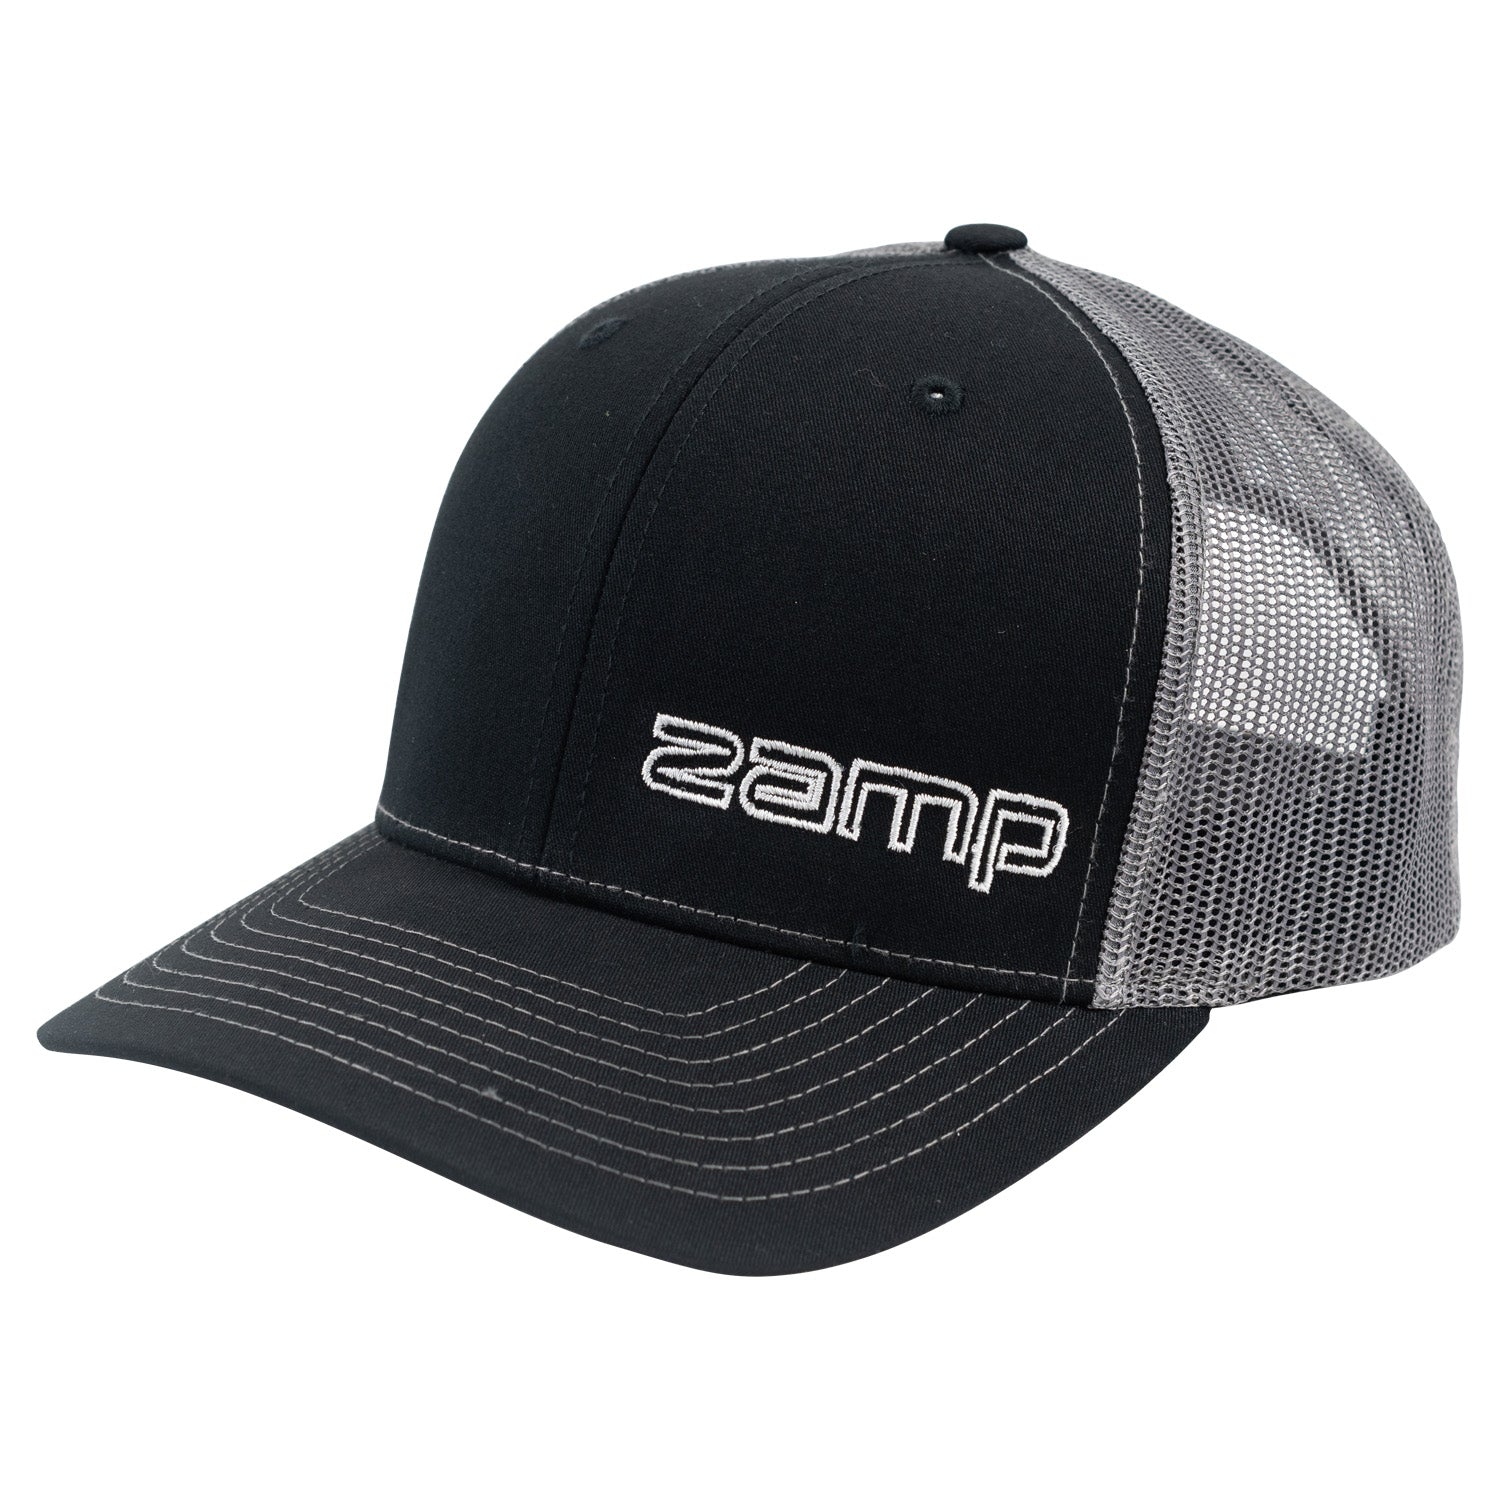 ZAMP Racing Hat Black/Charcoal N004003